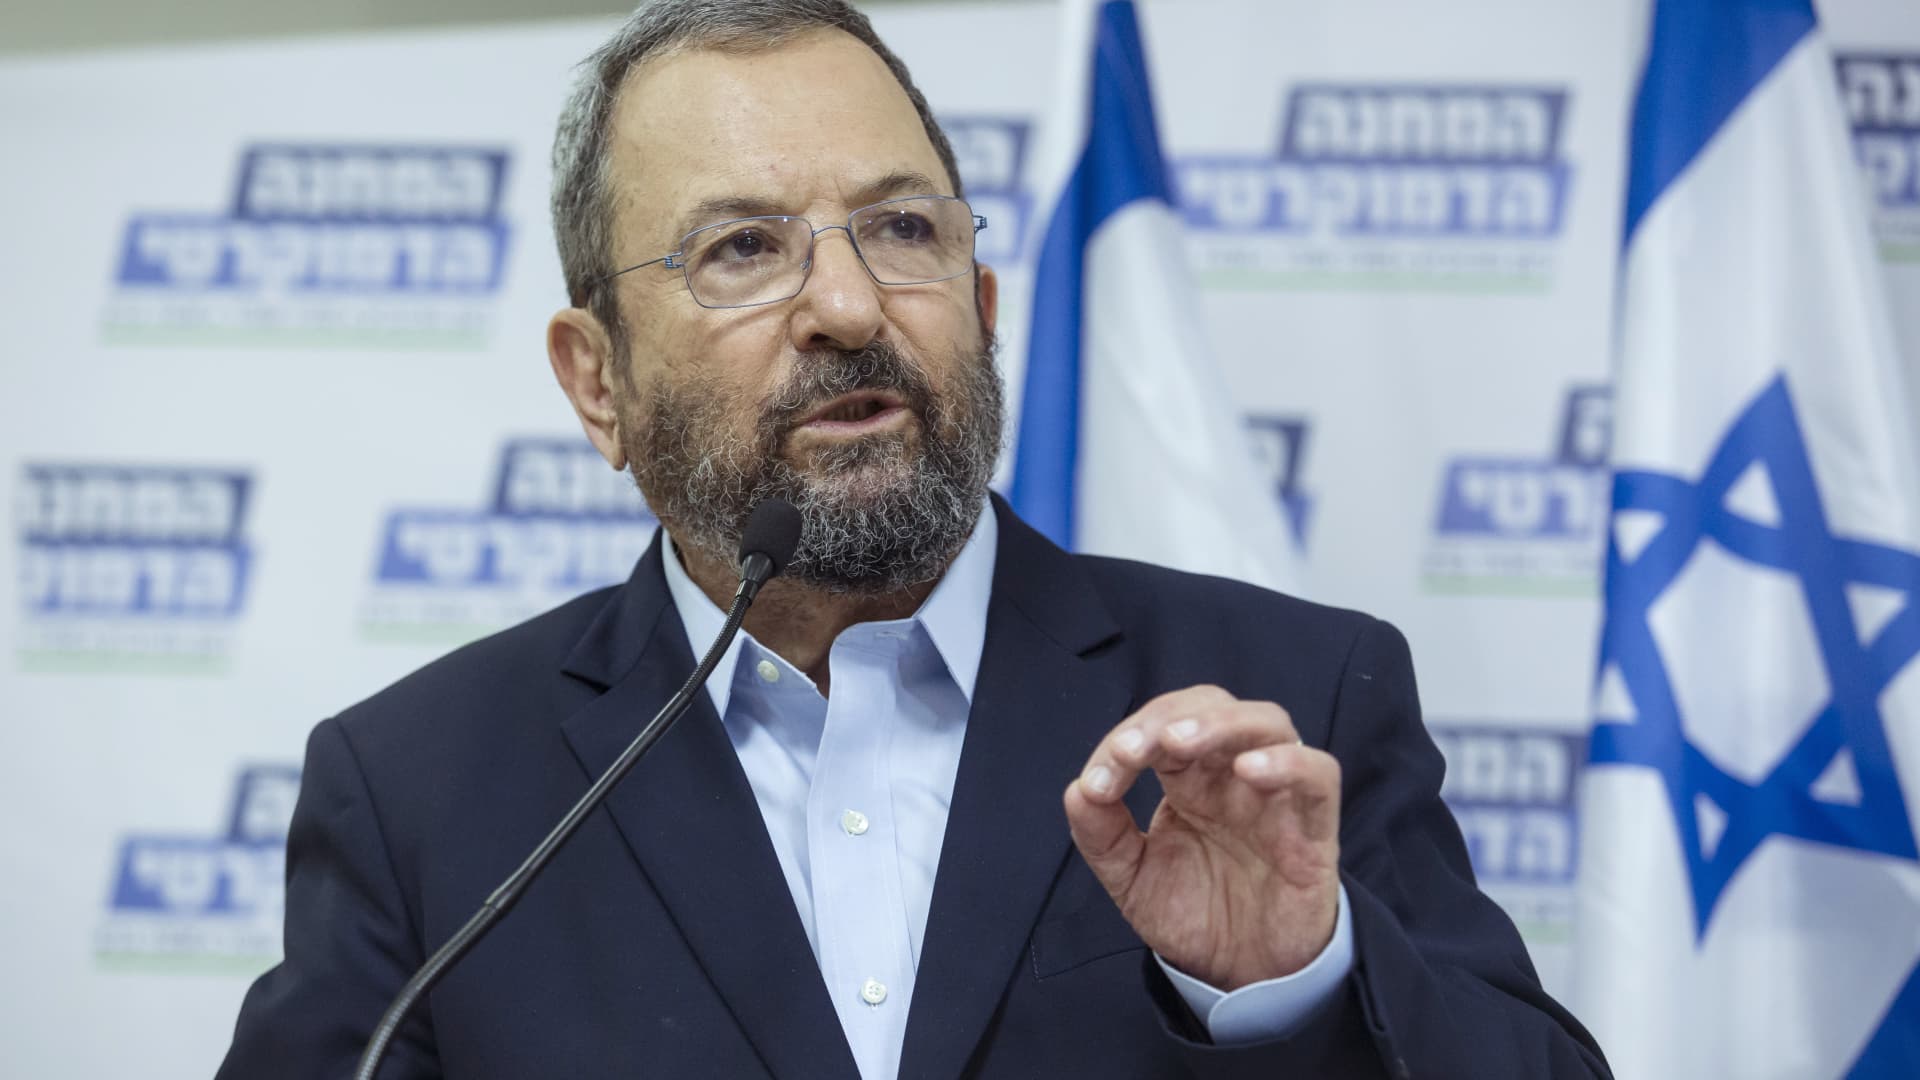 Former Israeli Prime Minister Ehud Barak speaks during a press conference on July 25, 2019 in Tel Aviv, Israel.